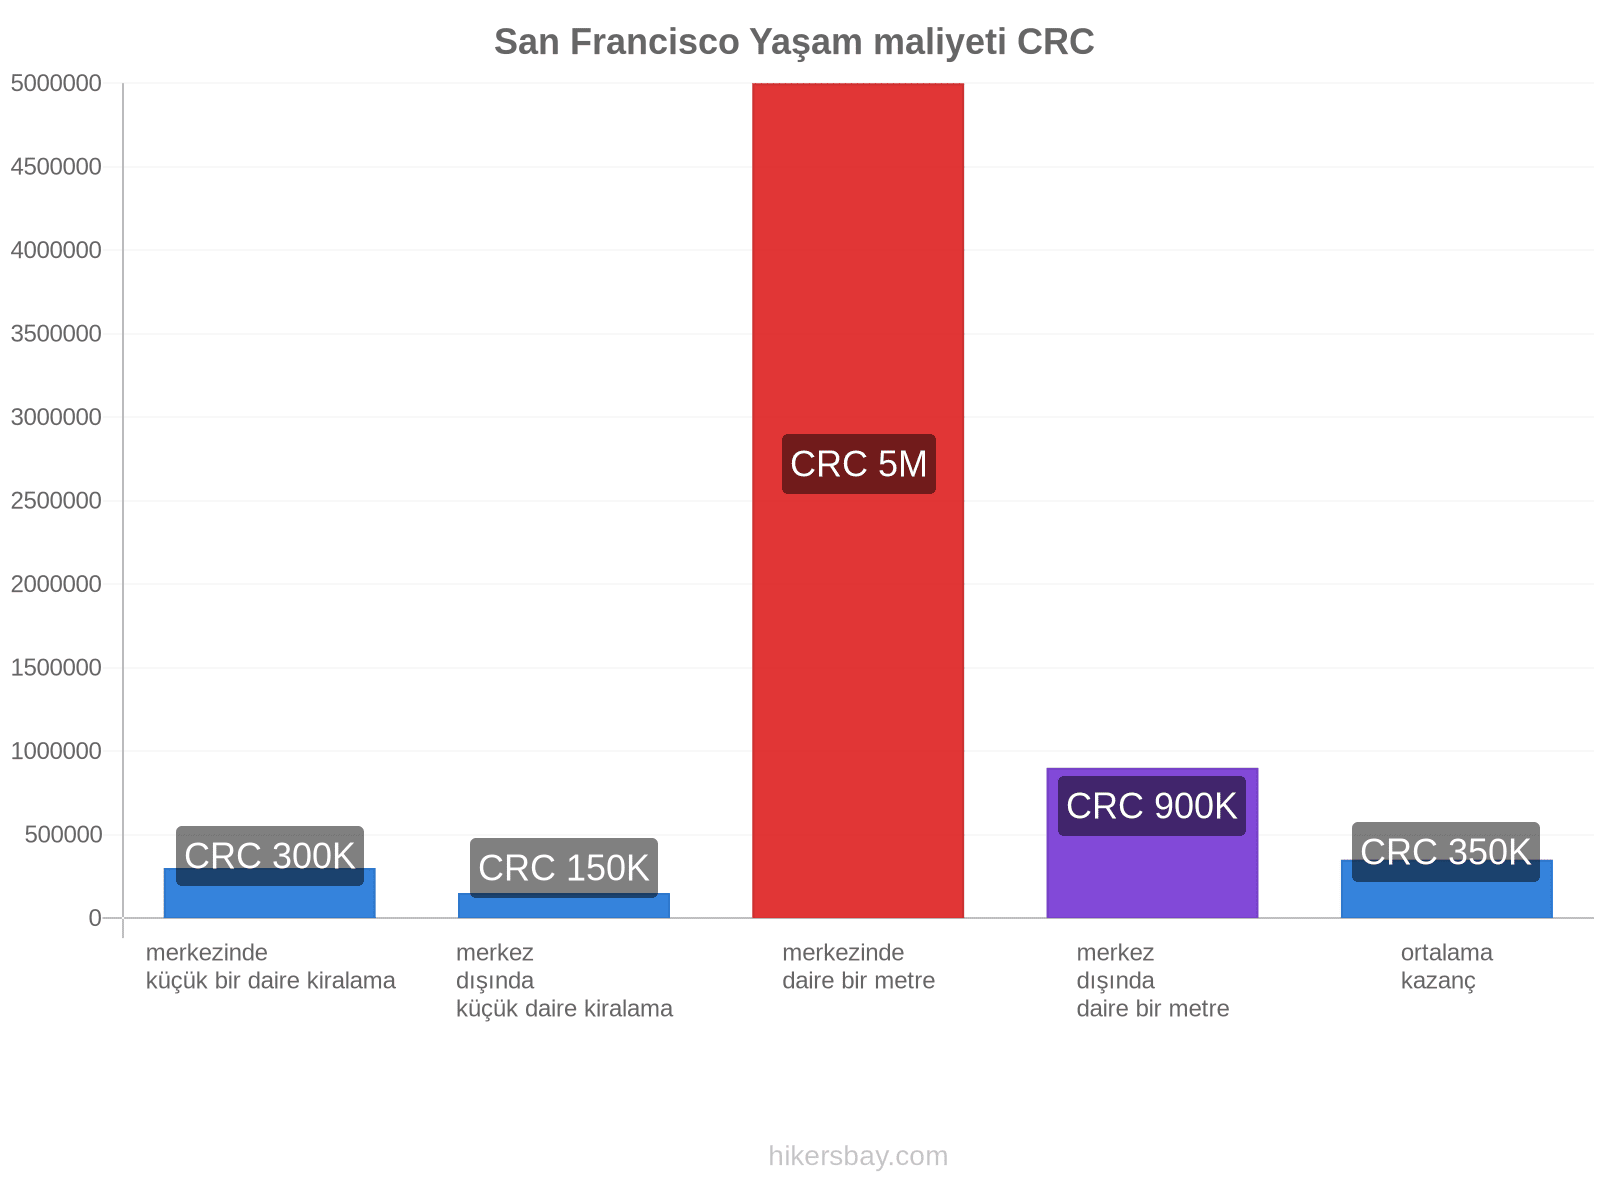 San Francisco yaşam maliyeti hikersbay.com